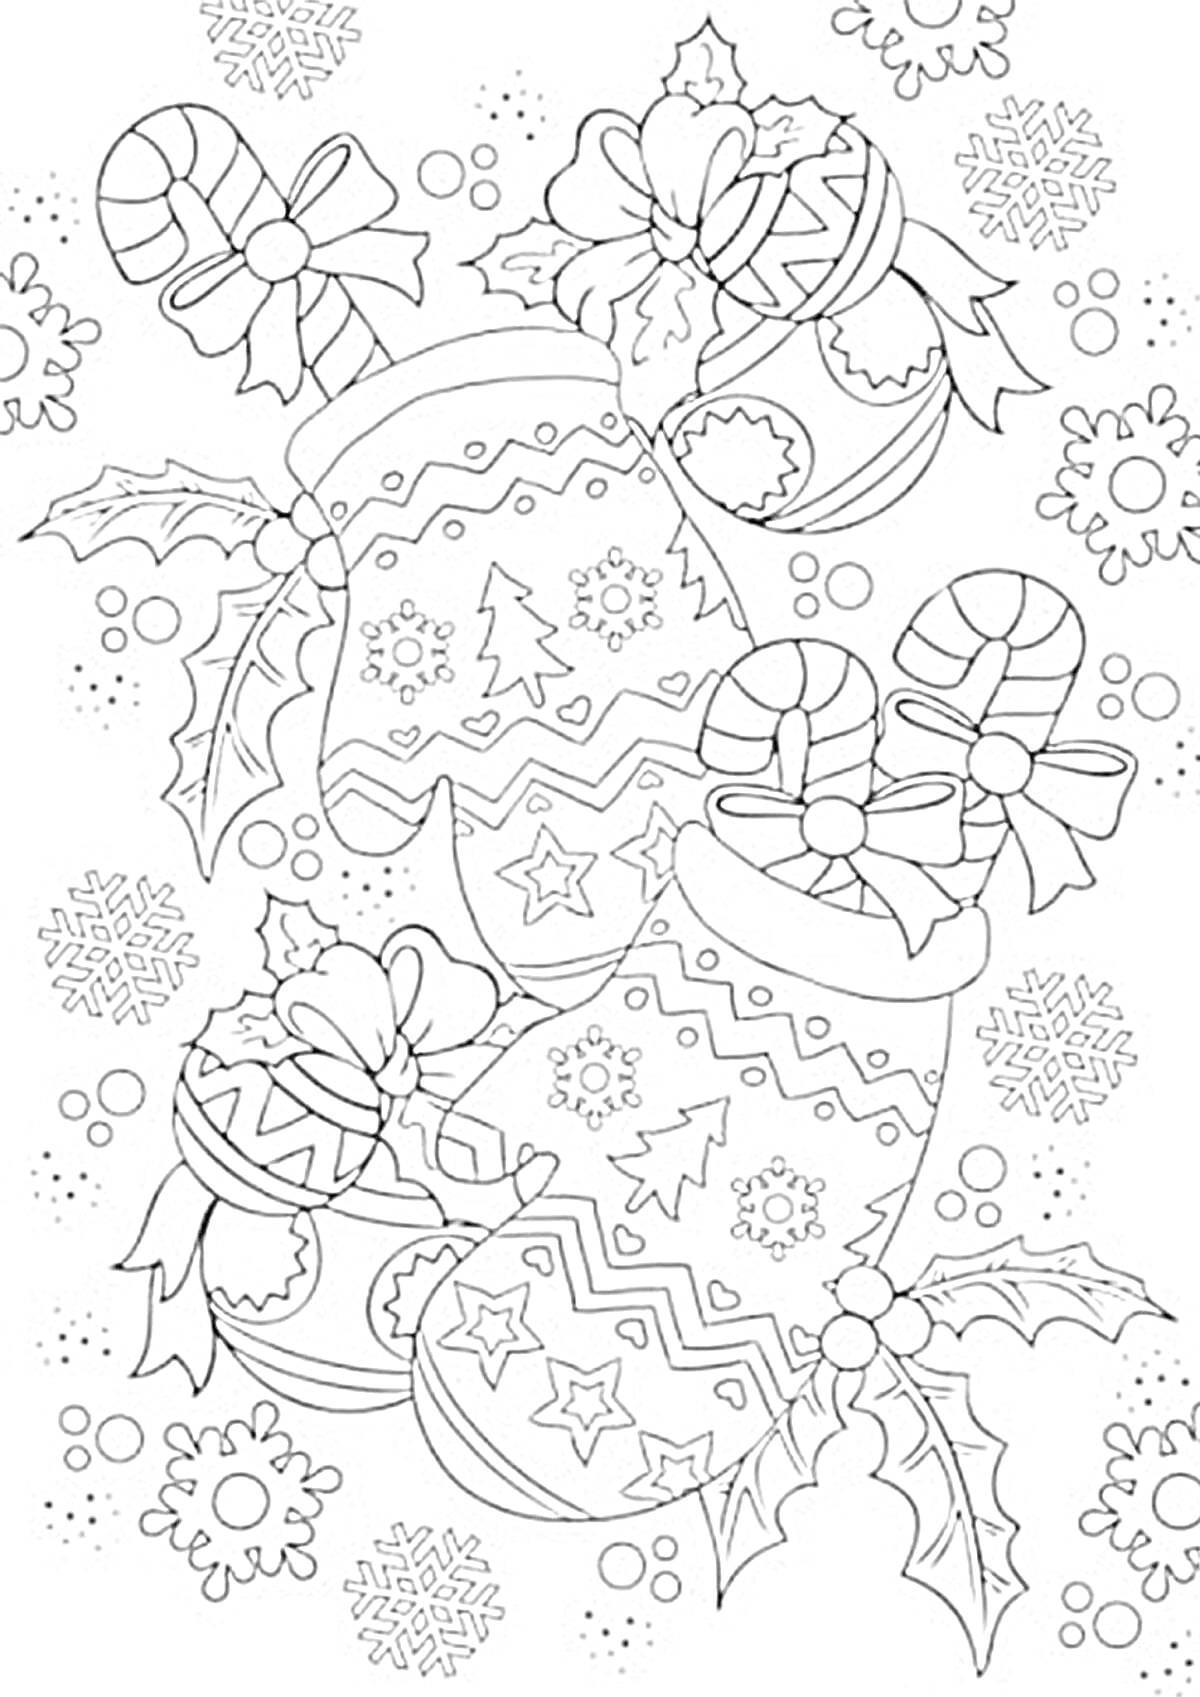 Раскраска Варежки с ёлочками и узорами, карамельные трости, новогодние шары с бантами и листьями падуба, снежинки